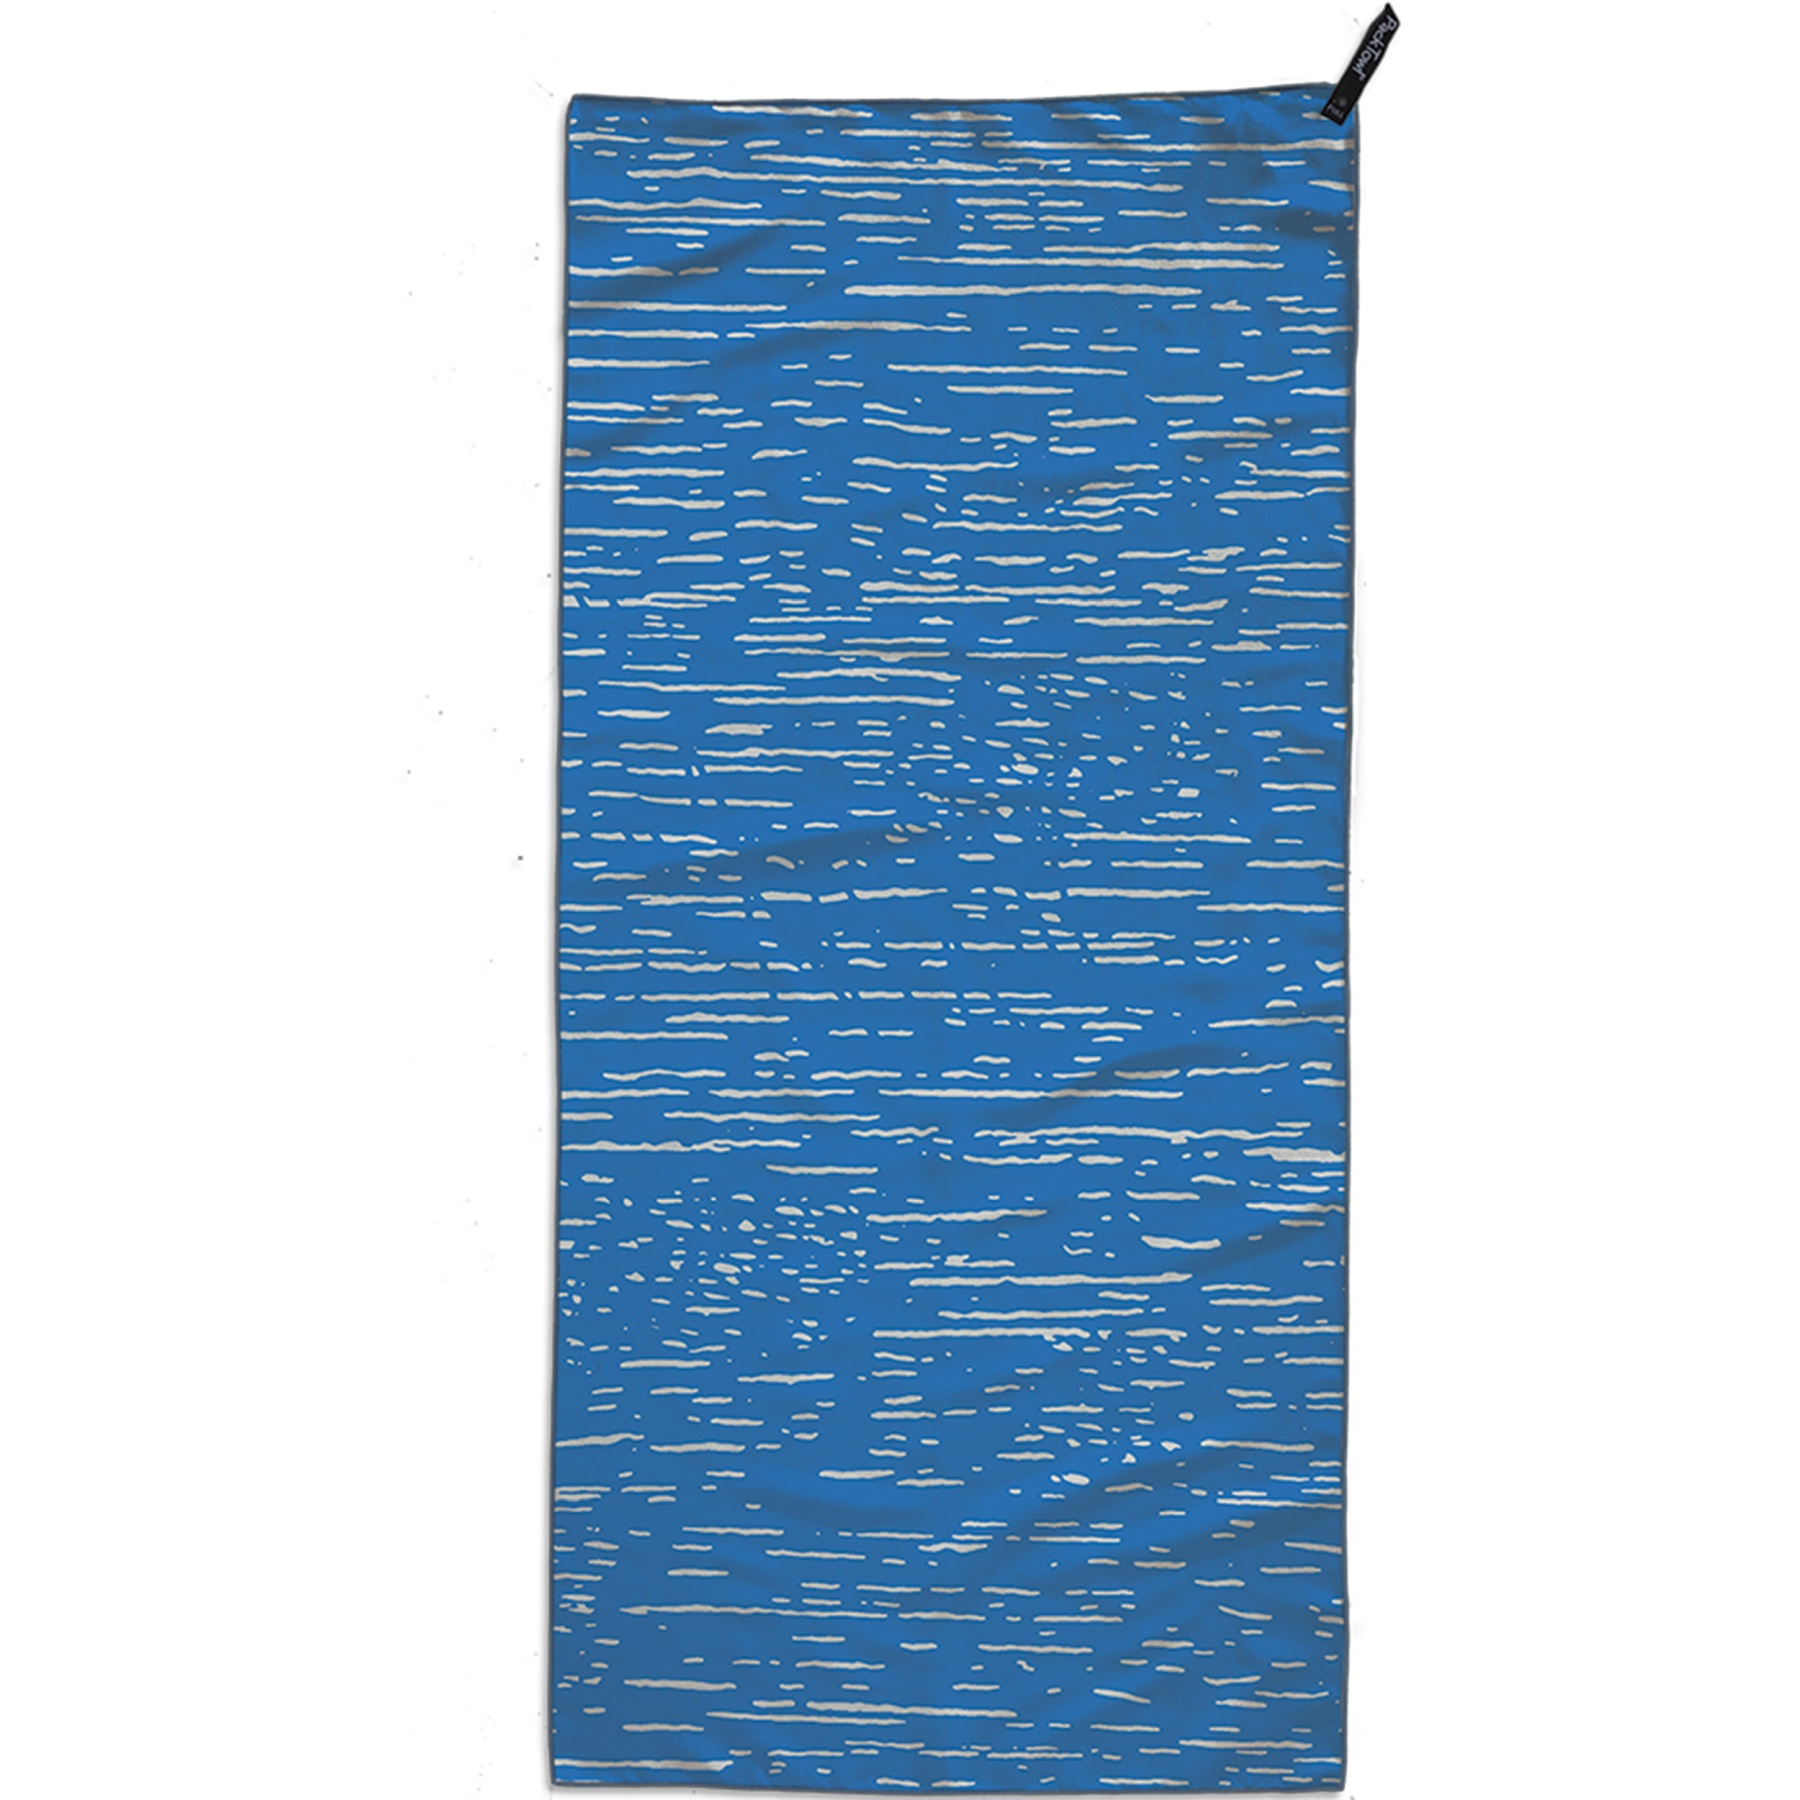 Productfoto van PackTowl Personal Body Handdoek - ripple print